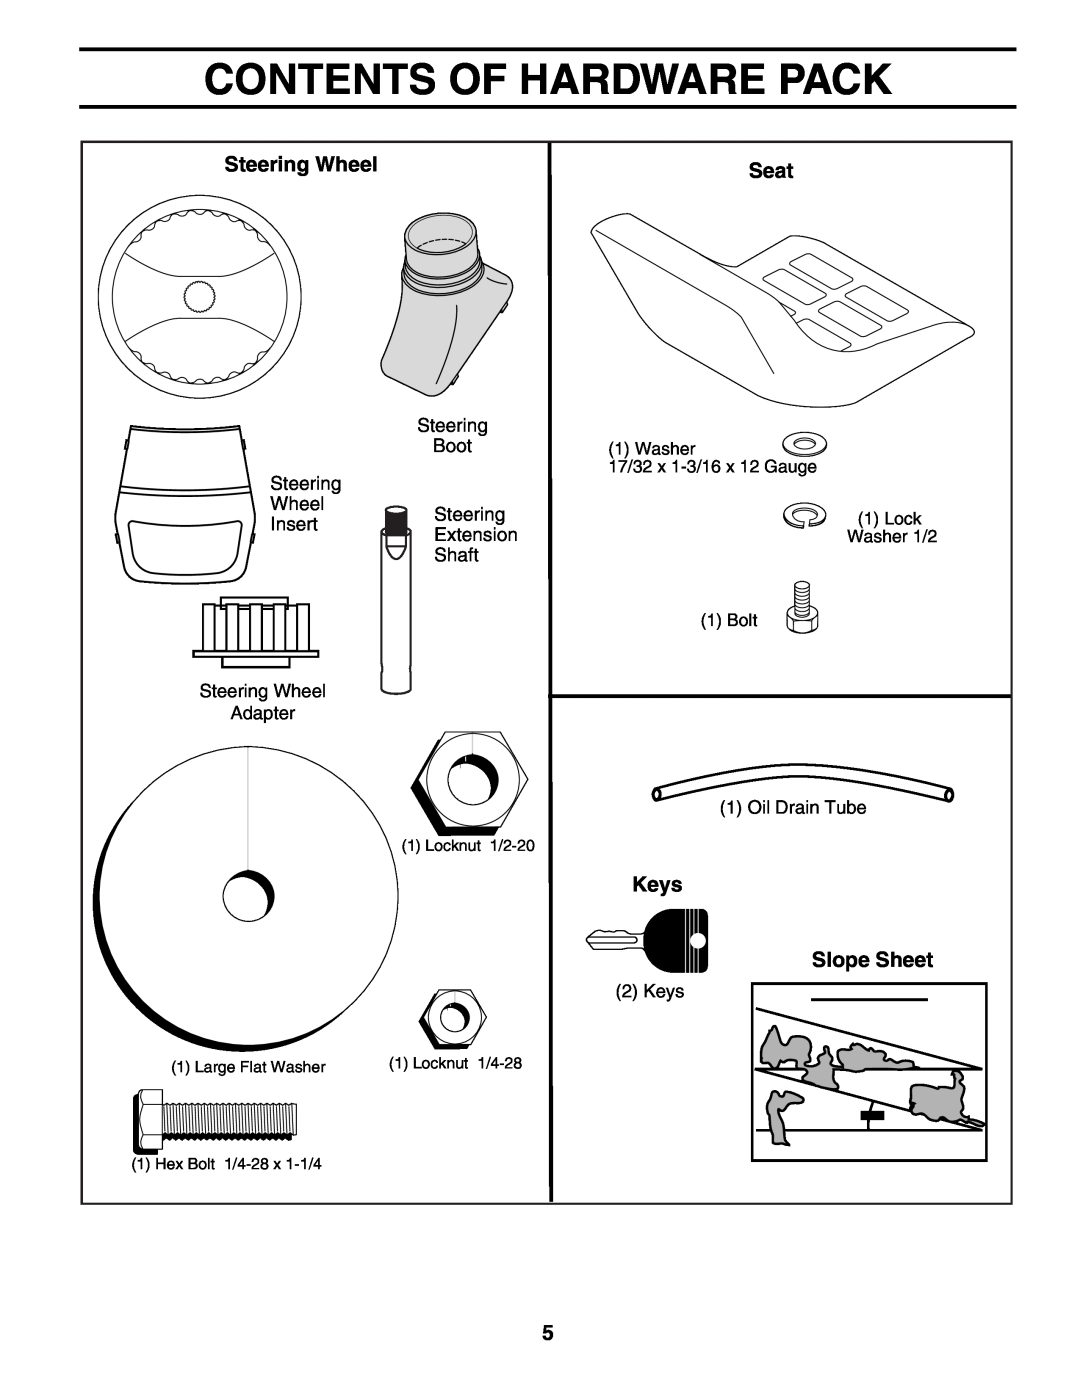 Poulan 184518, 954569554 manual Contents Of Hardware Pack, Steering Wheel, Seat, Keys, Slope Sheet 